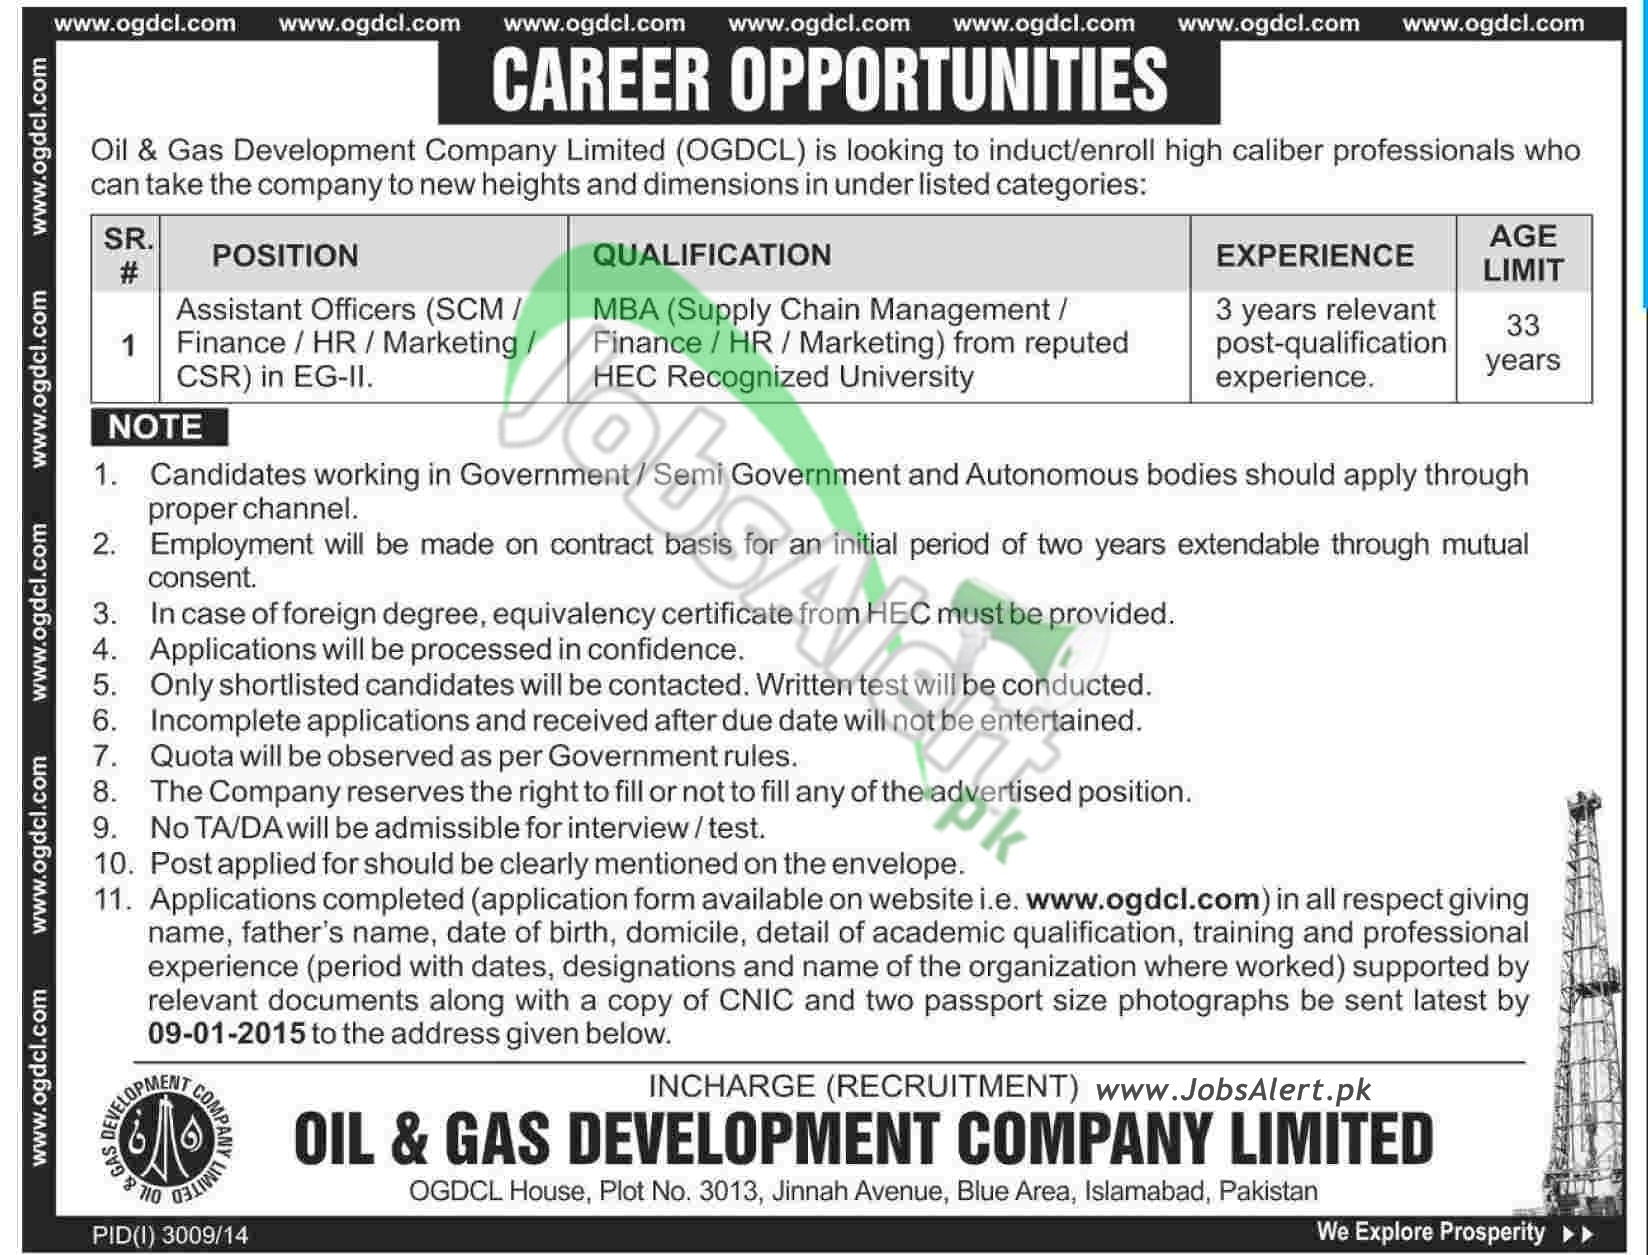 Oil & Gas Development Company